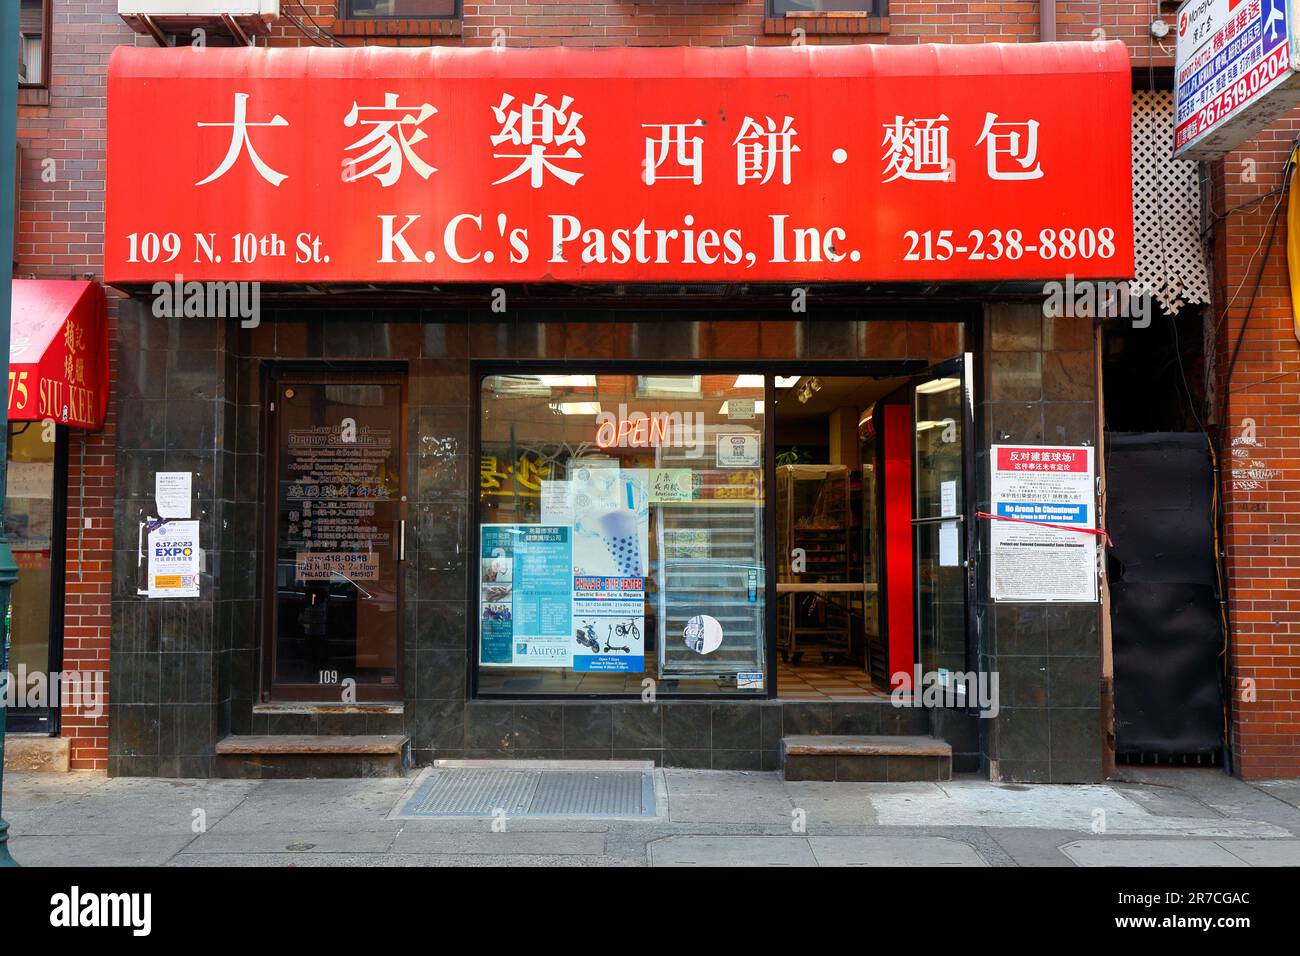 K C's Pasticceria 大家興, 109 N 10th St, foto di un negozio di Philadelphia di una panetteria cinese a Chinatown, Pennsylvania. Foto Stock